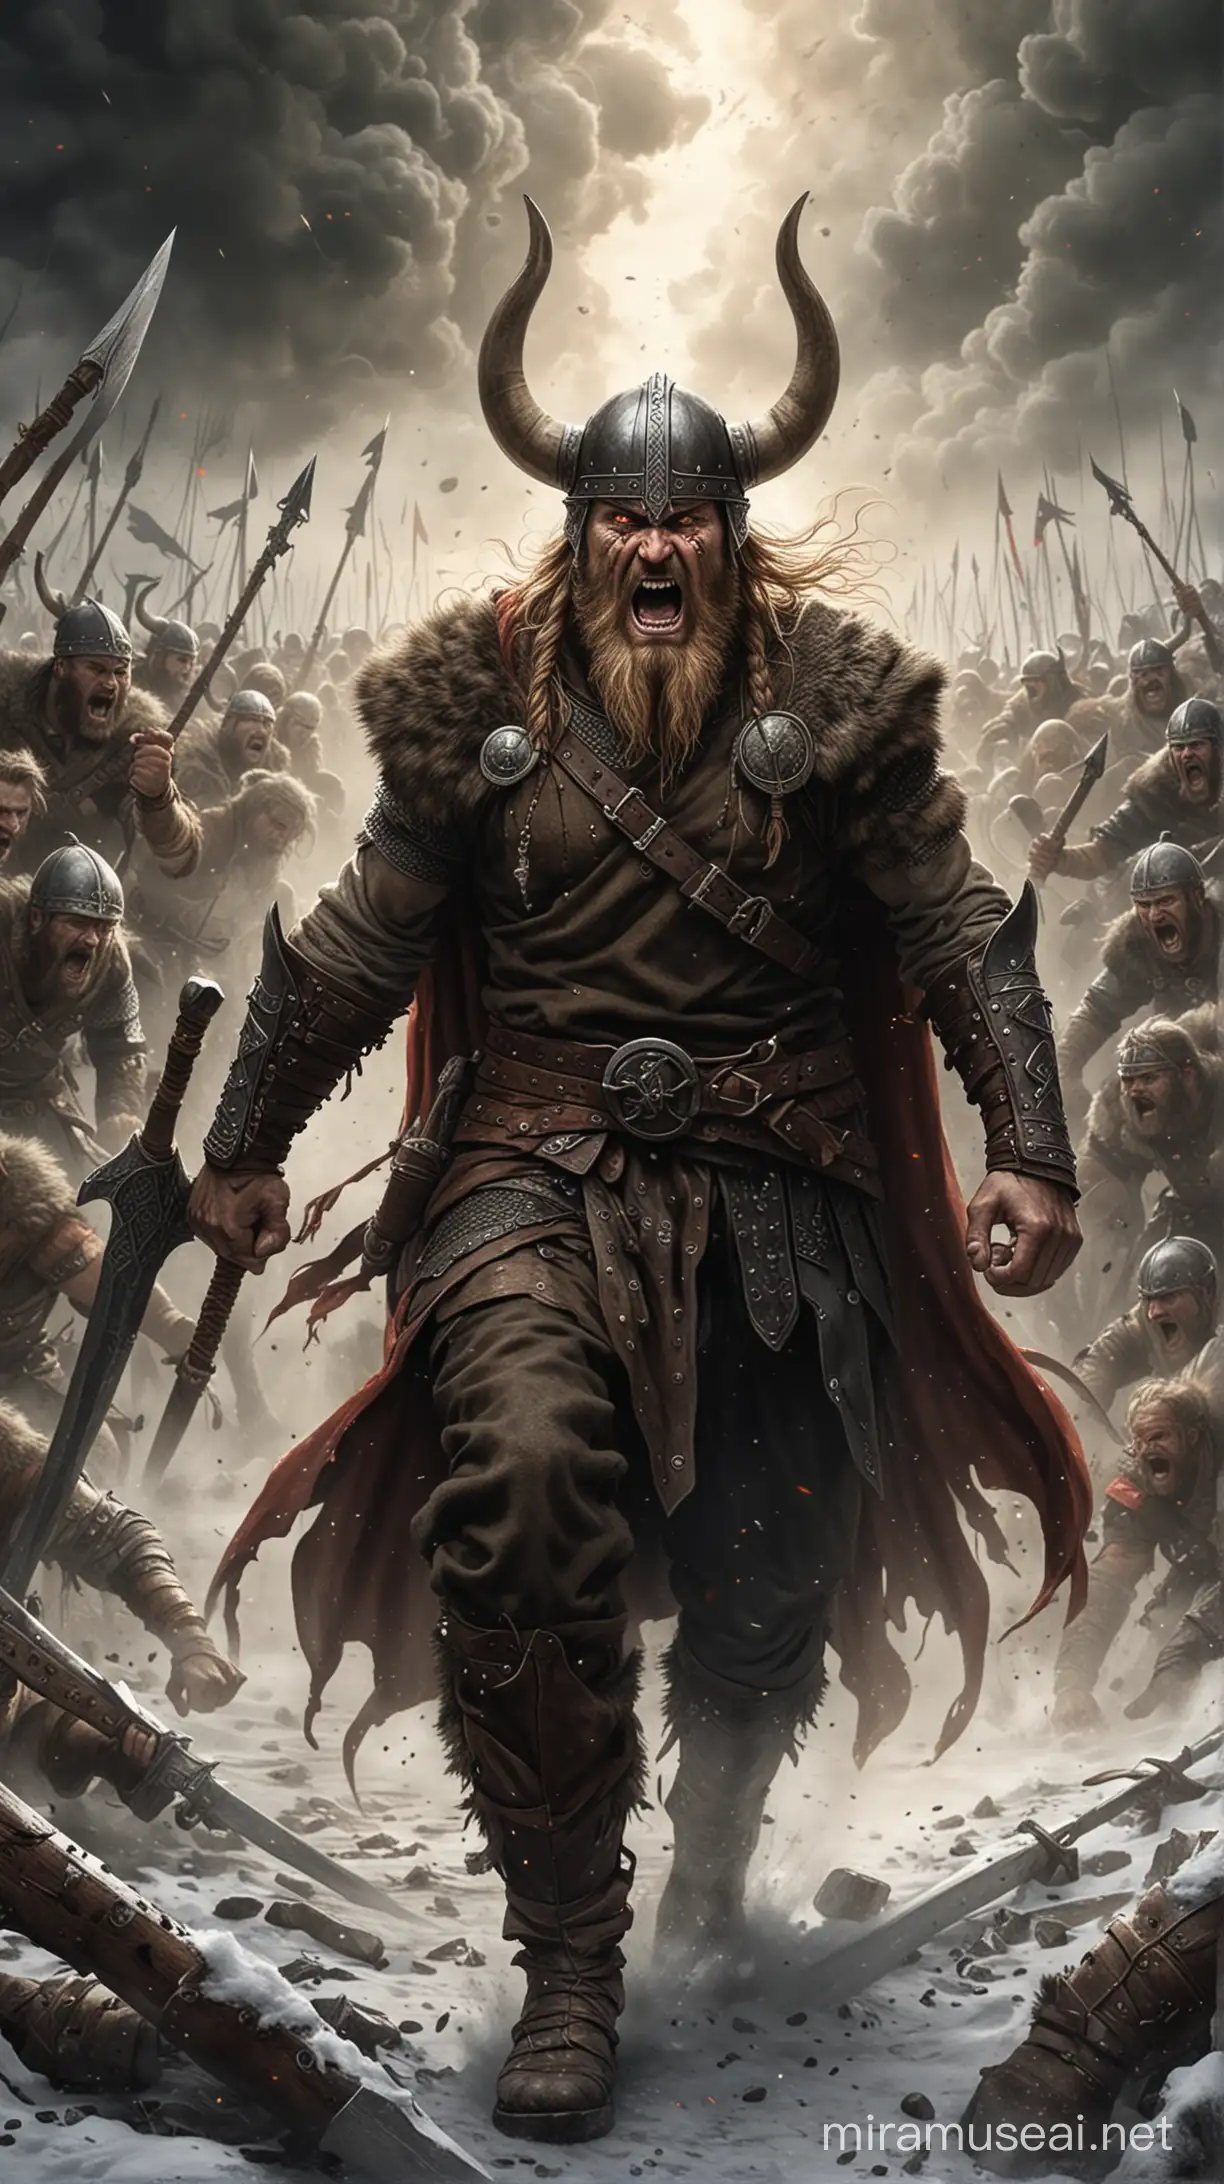 Intense Viking Warrior Entering Berserk Trance for Battle